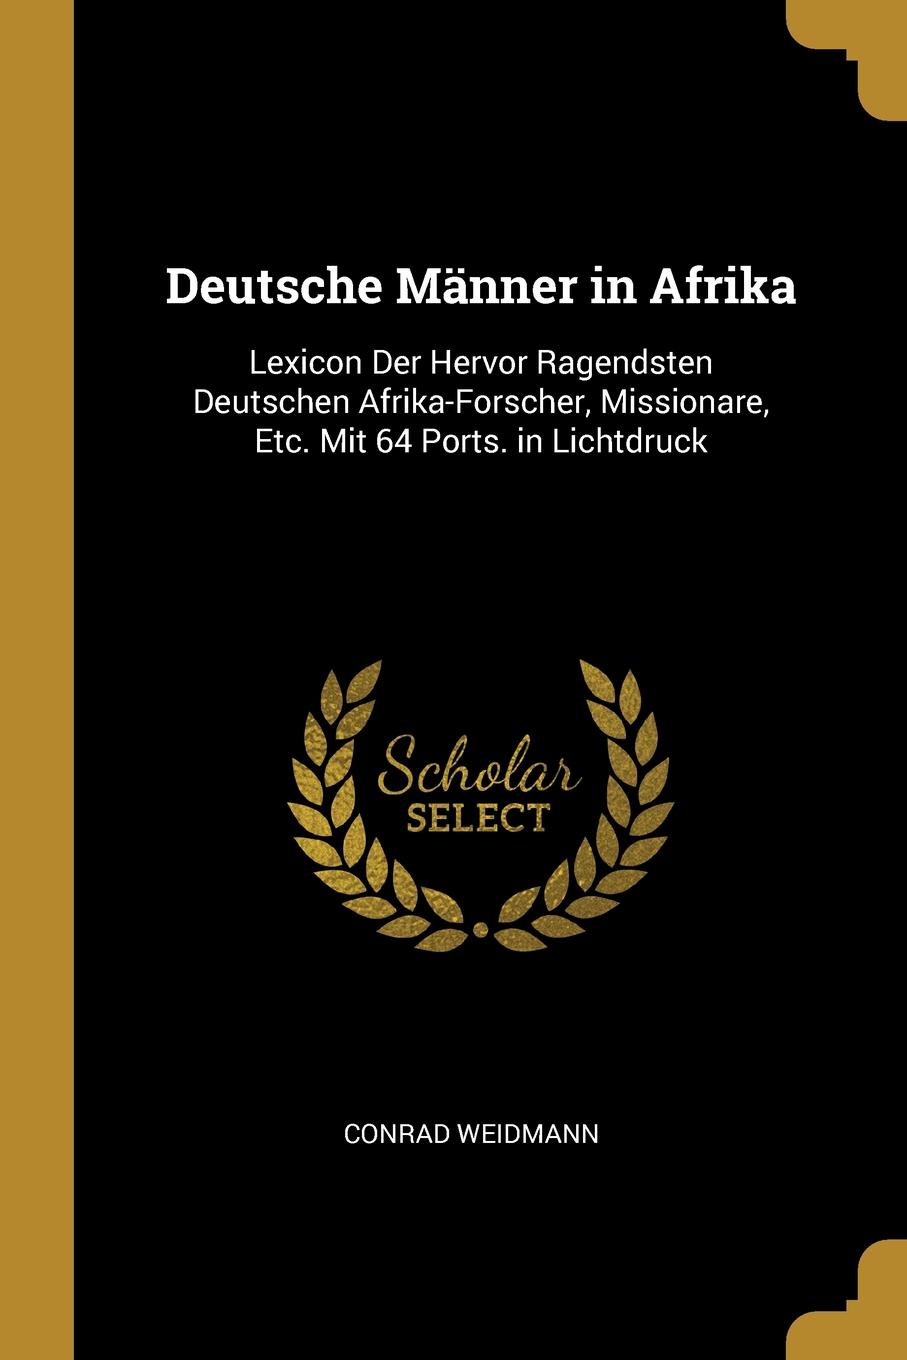 Deutsche Manner in Afrika. Lexicon Der Hervor Ragendsten Deutschen Afrika-Forscher, Missionare, Etc. Mit 64 Ports. in Lichtdruck